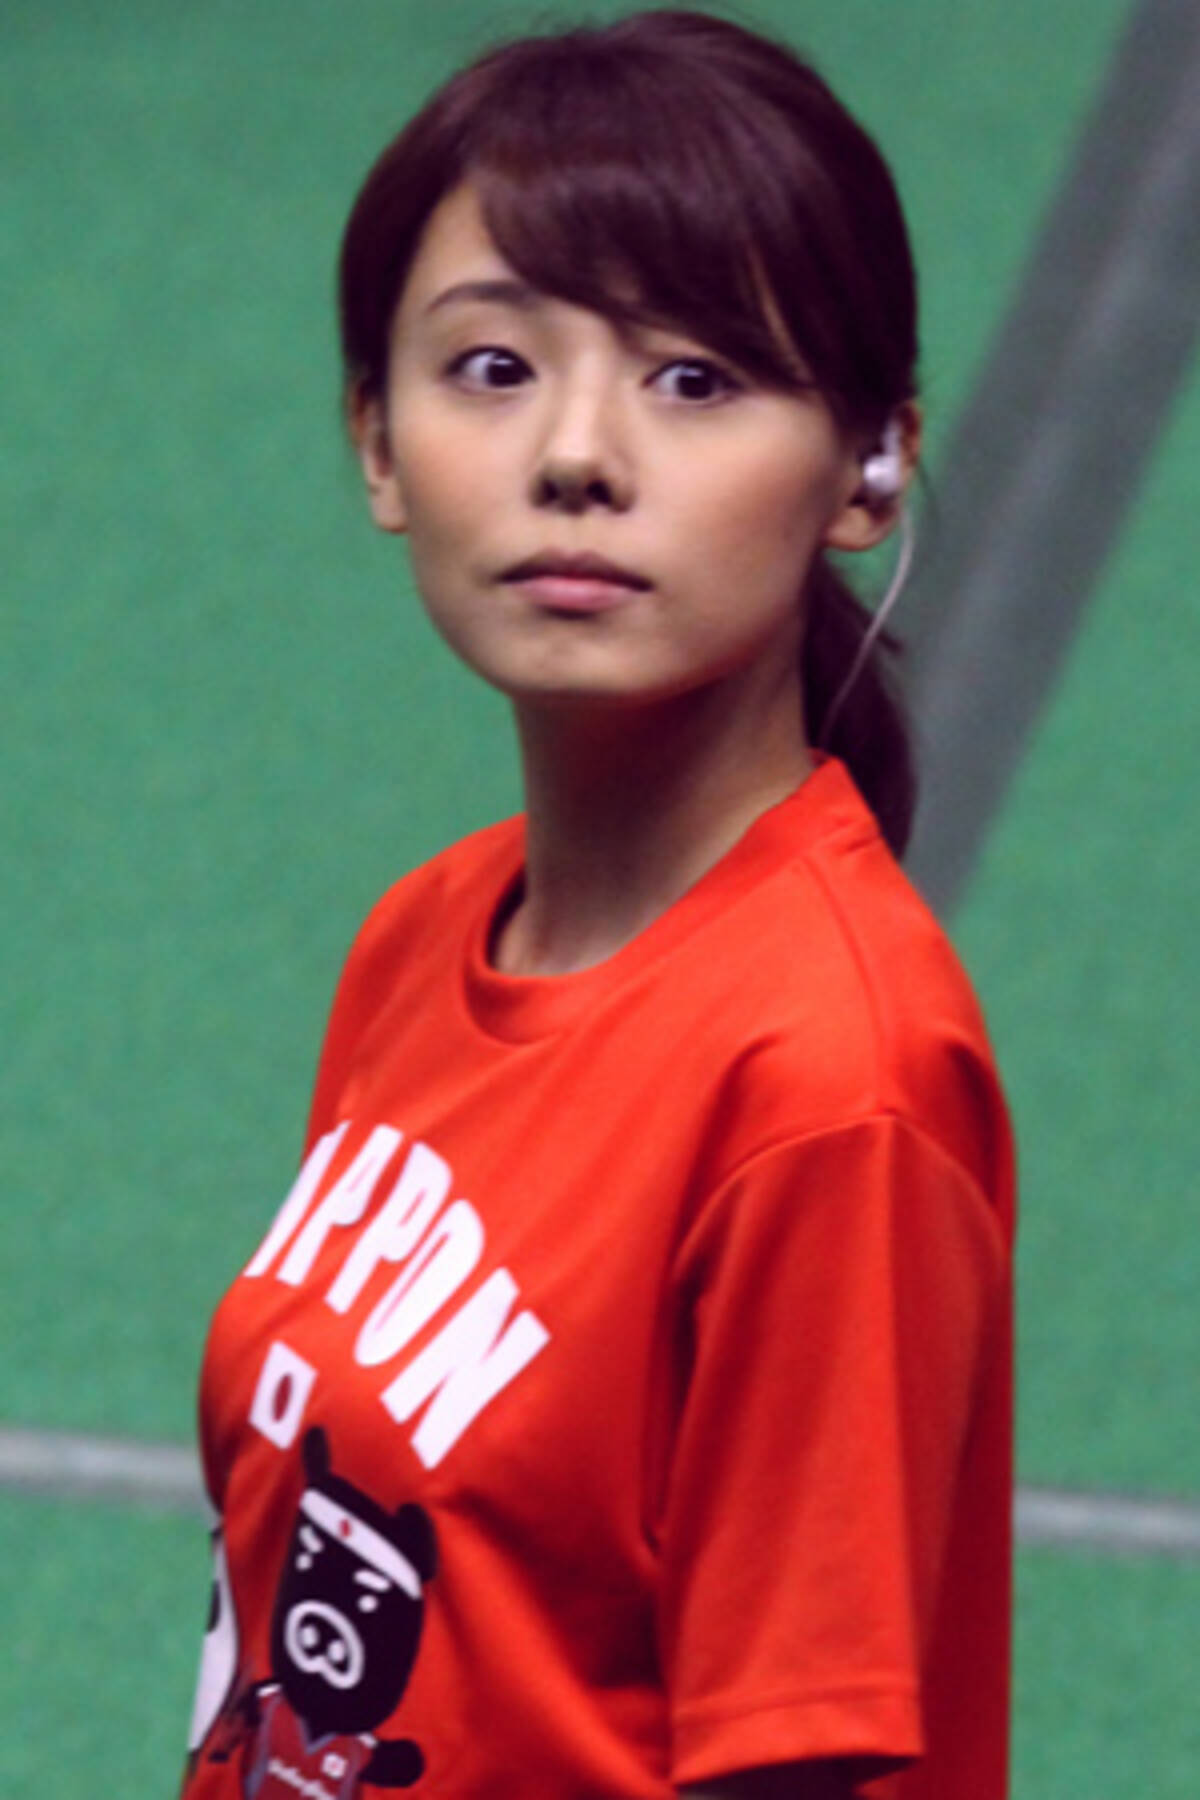 スポーツ担当を外れたフジ 宮澤智アナが新人育成枠に転落した理由は 16年10月9日 エキサイトニュース